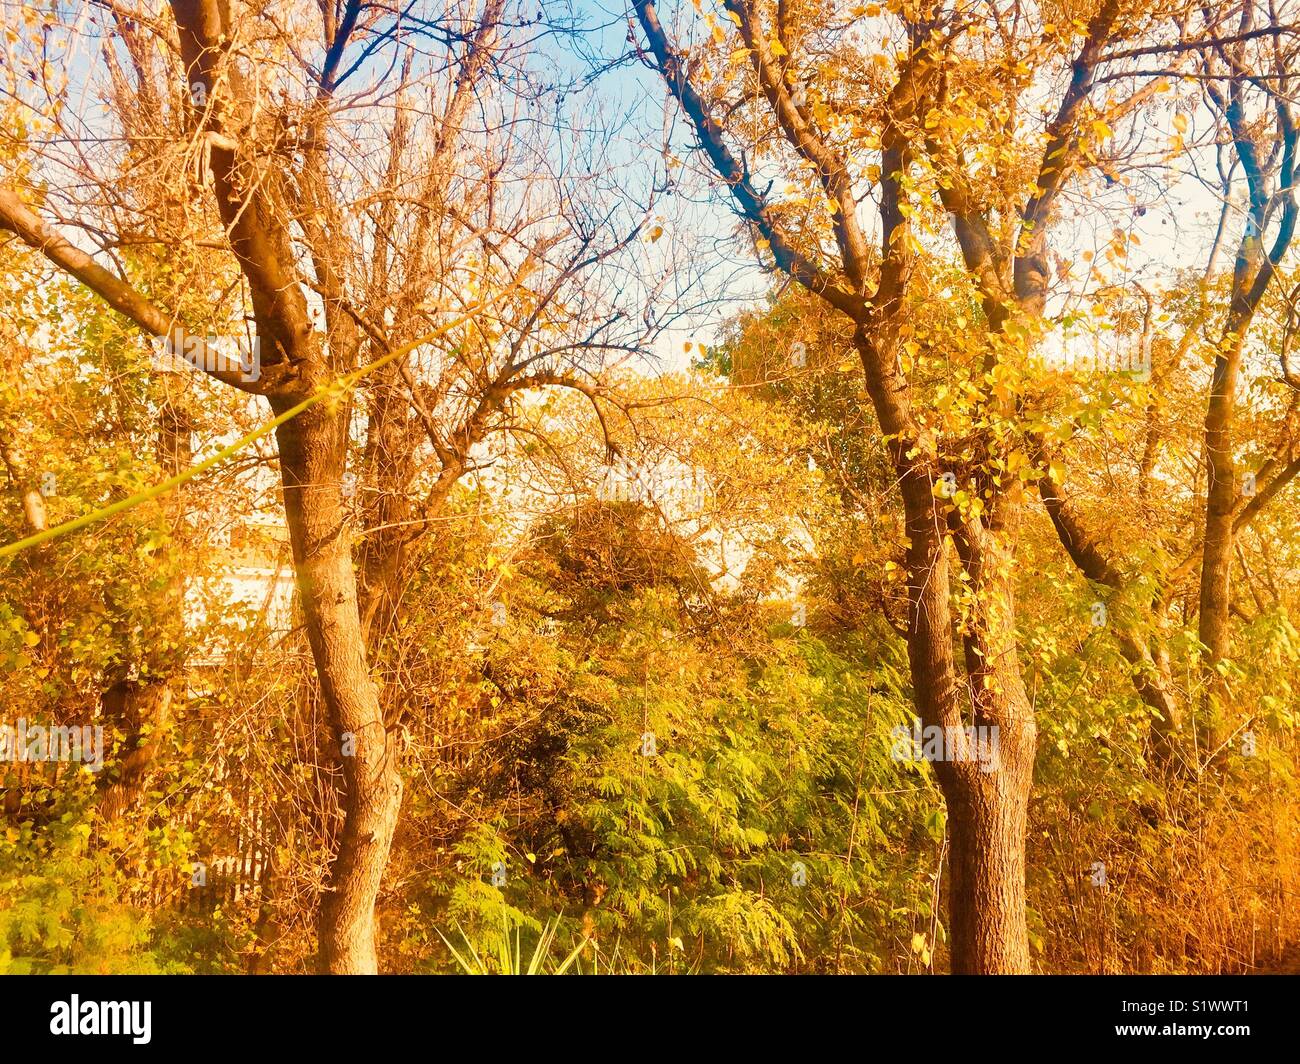 Autumn season in Beautiful city Islamabad Pakistan Stock Photo